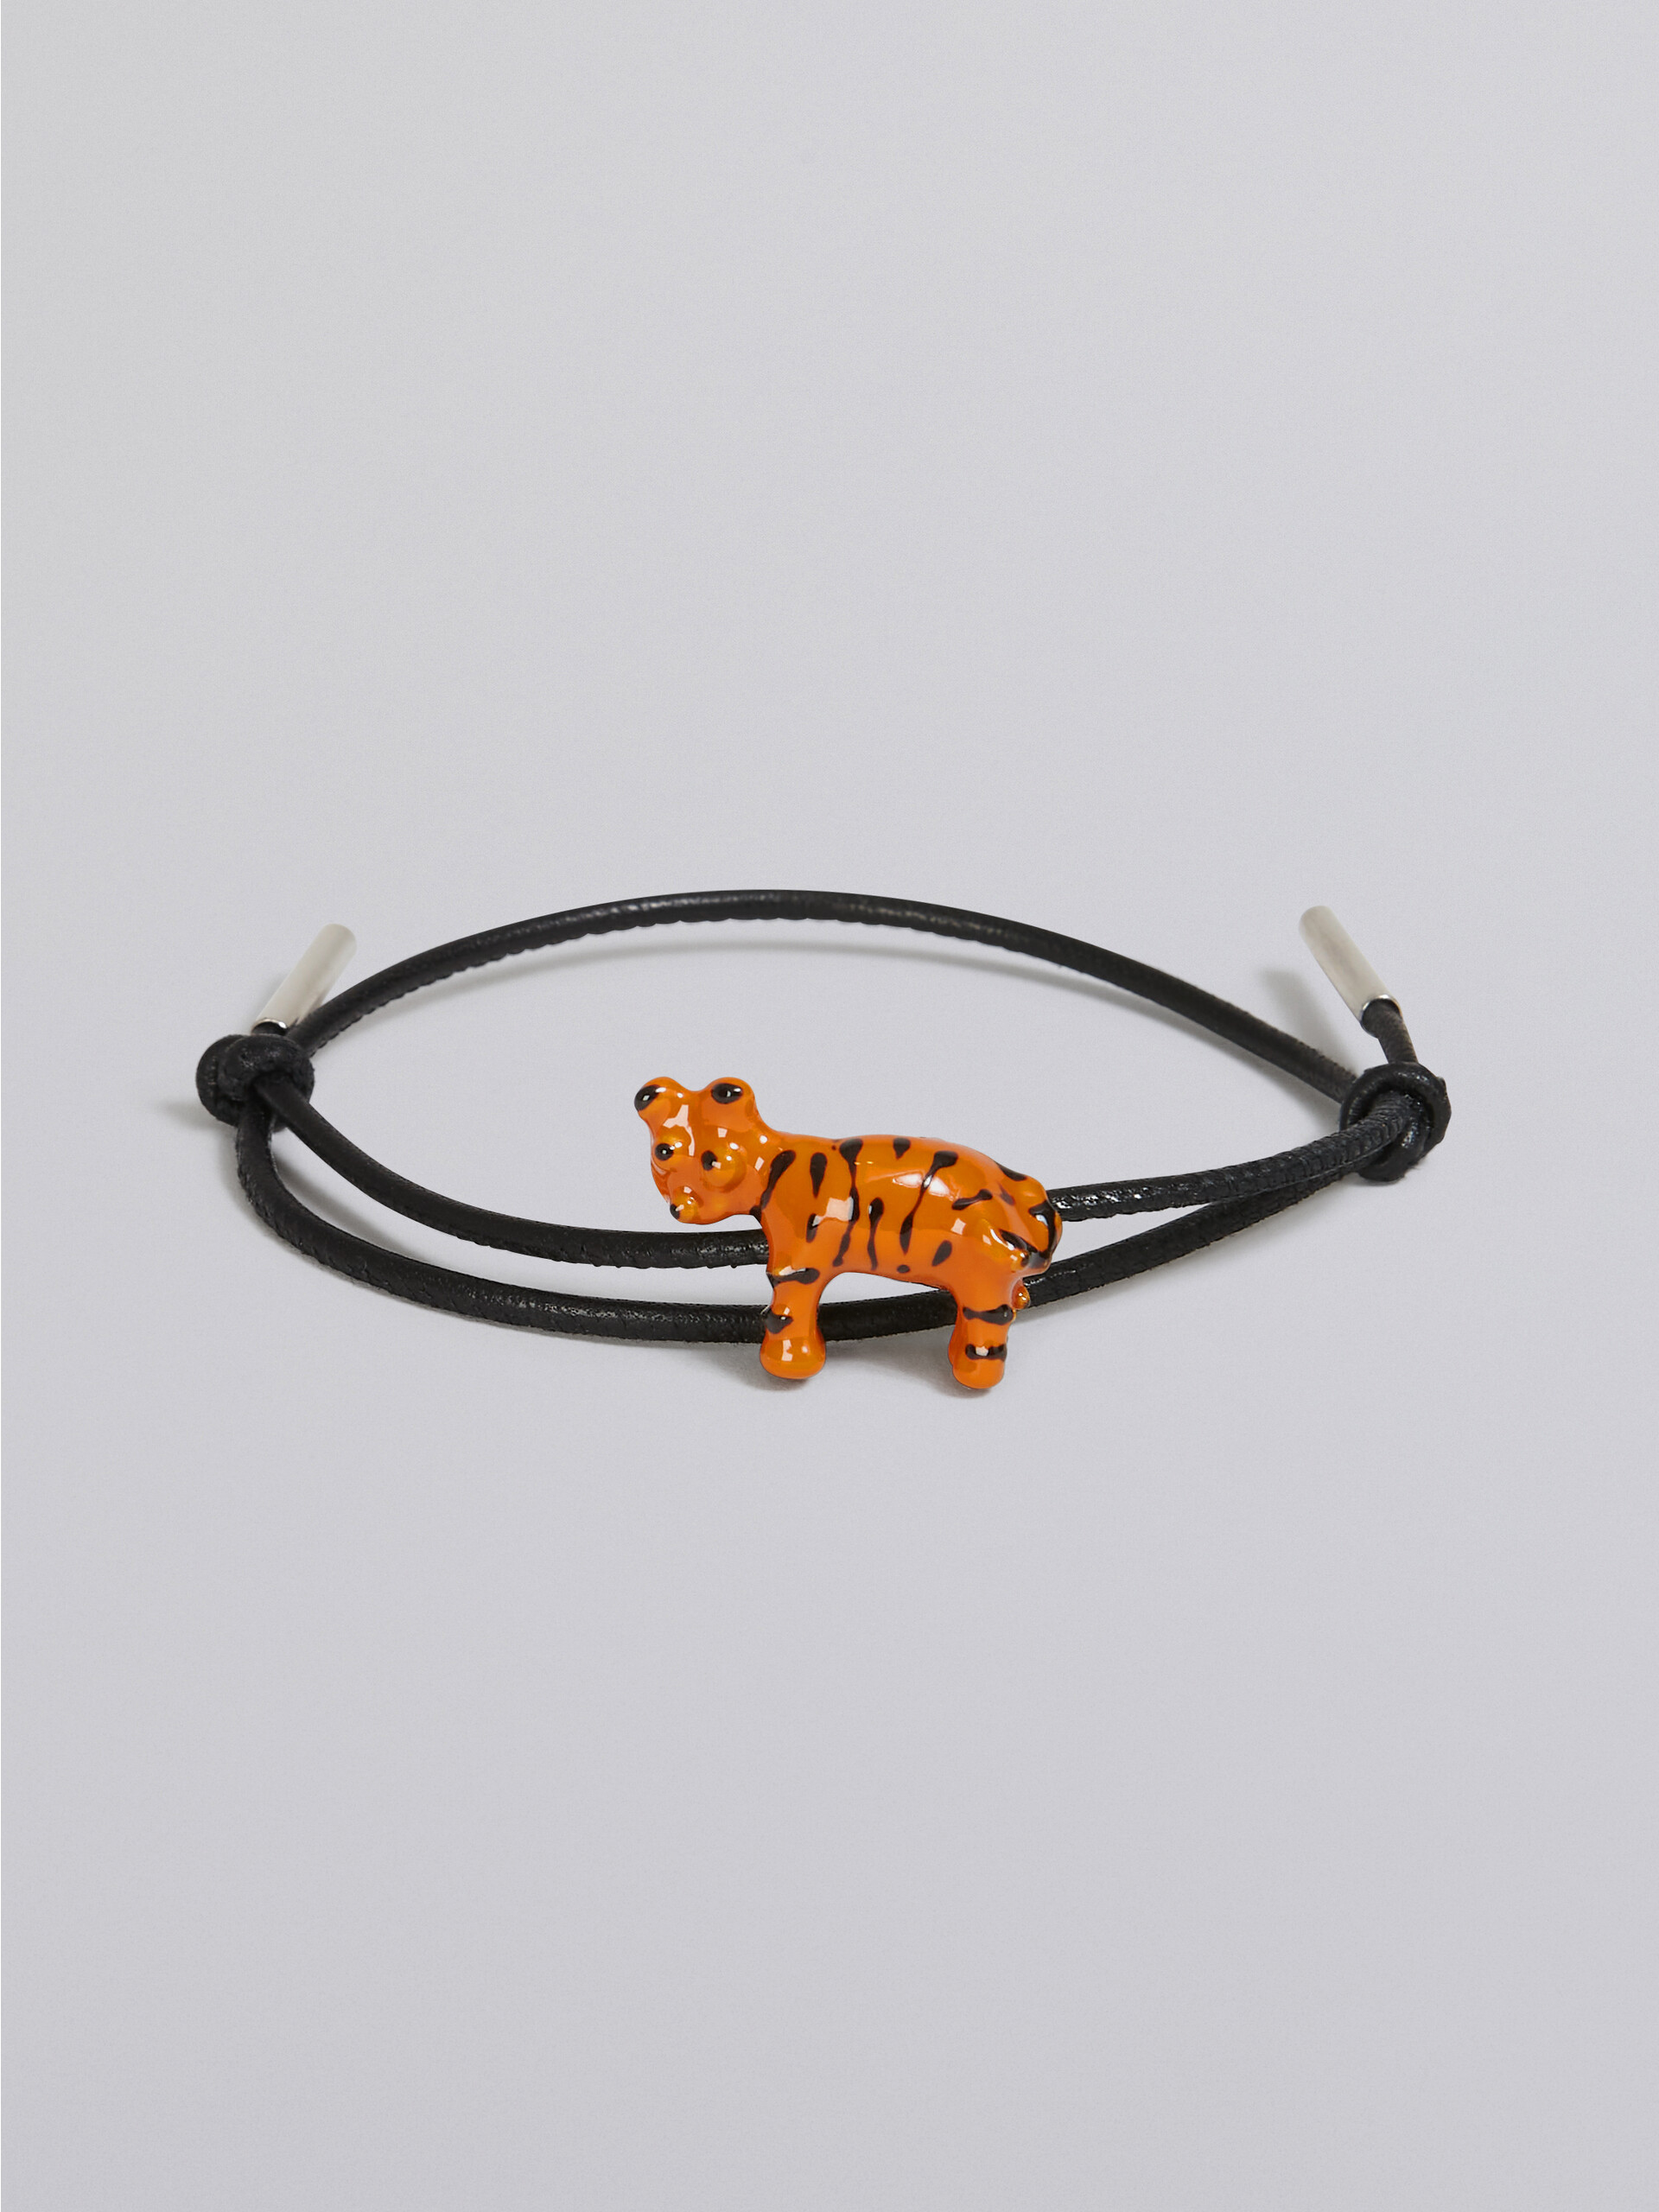 Leather bracelet with enamelled metal tiger - Bracelets - Image 4